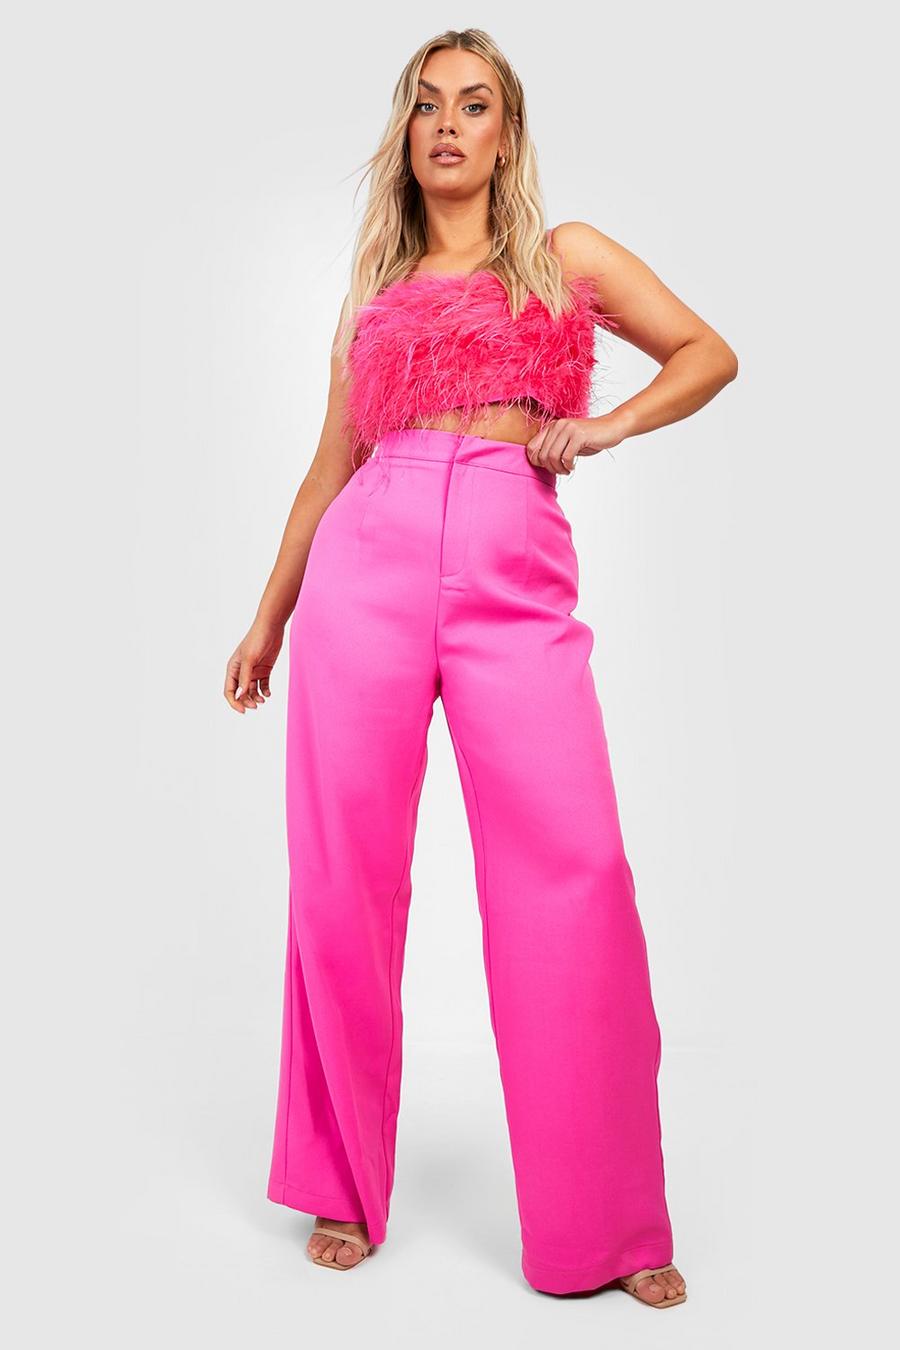 Pantalones Plus entallados, Hot pink image number 1